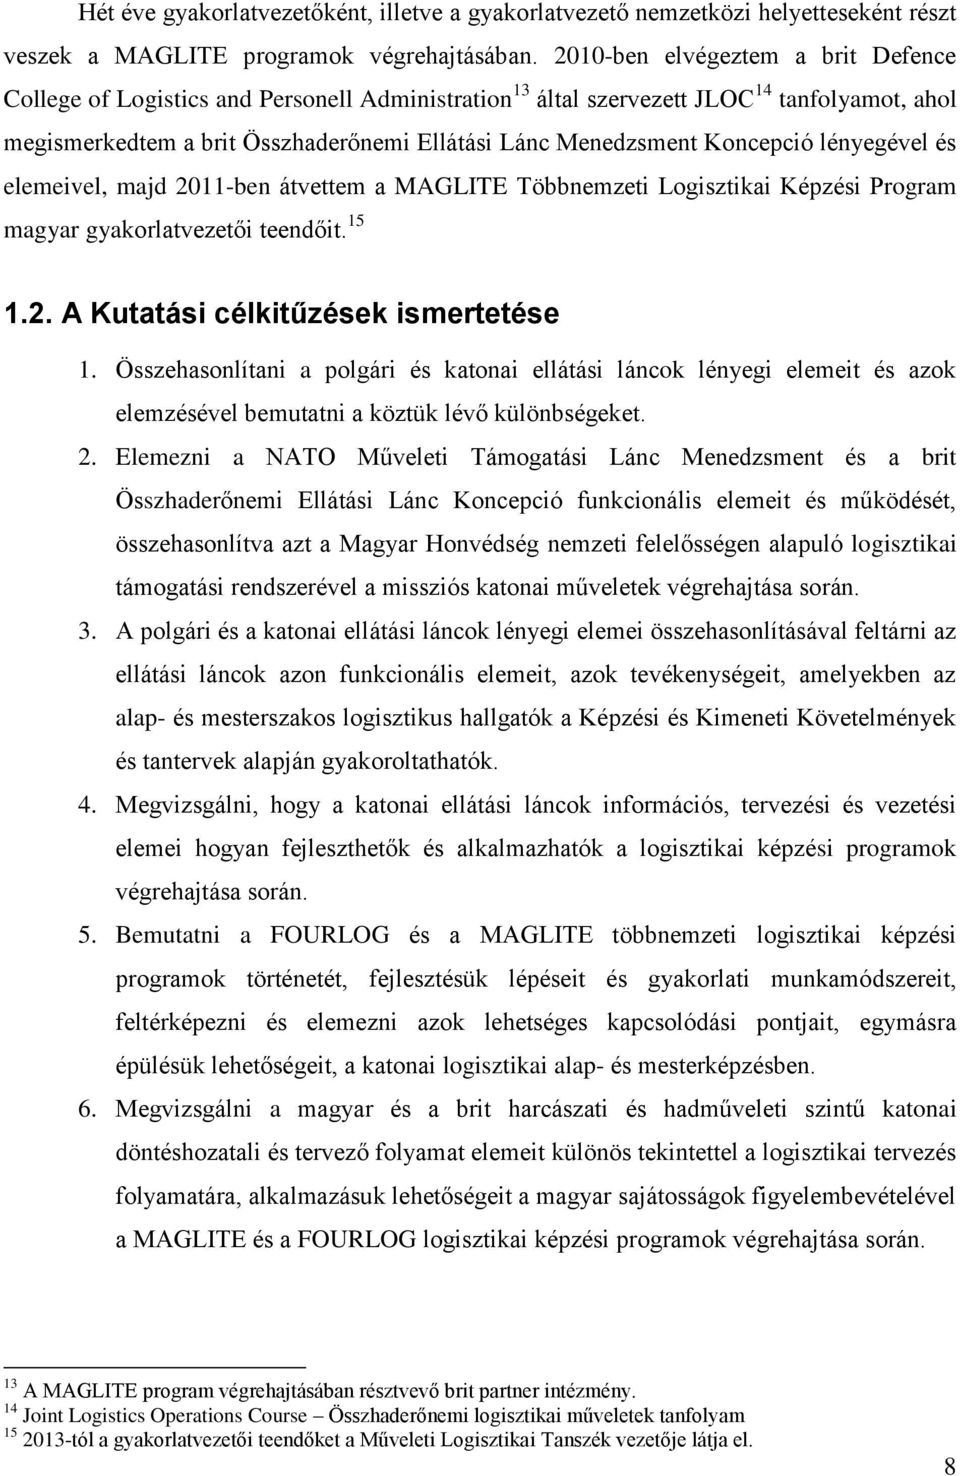 Koncepció lényegével és elemeivel, majd 2011-ben átvettem a MAGLITE Többnemzeti Logisztikai Képzési Program magyar gyakorlatvezetői teendőit. 15 1.2. A Kutatási célkitűzések ismertetése 1.